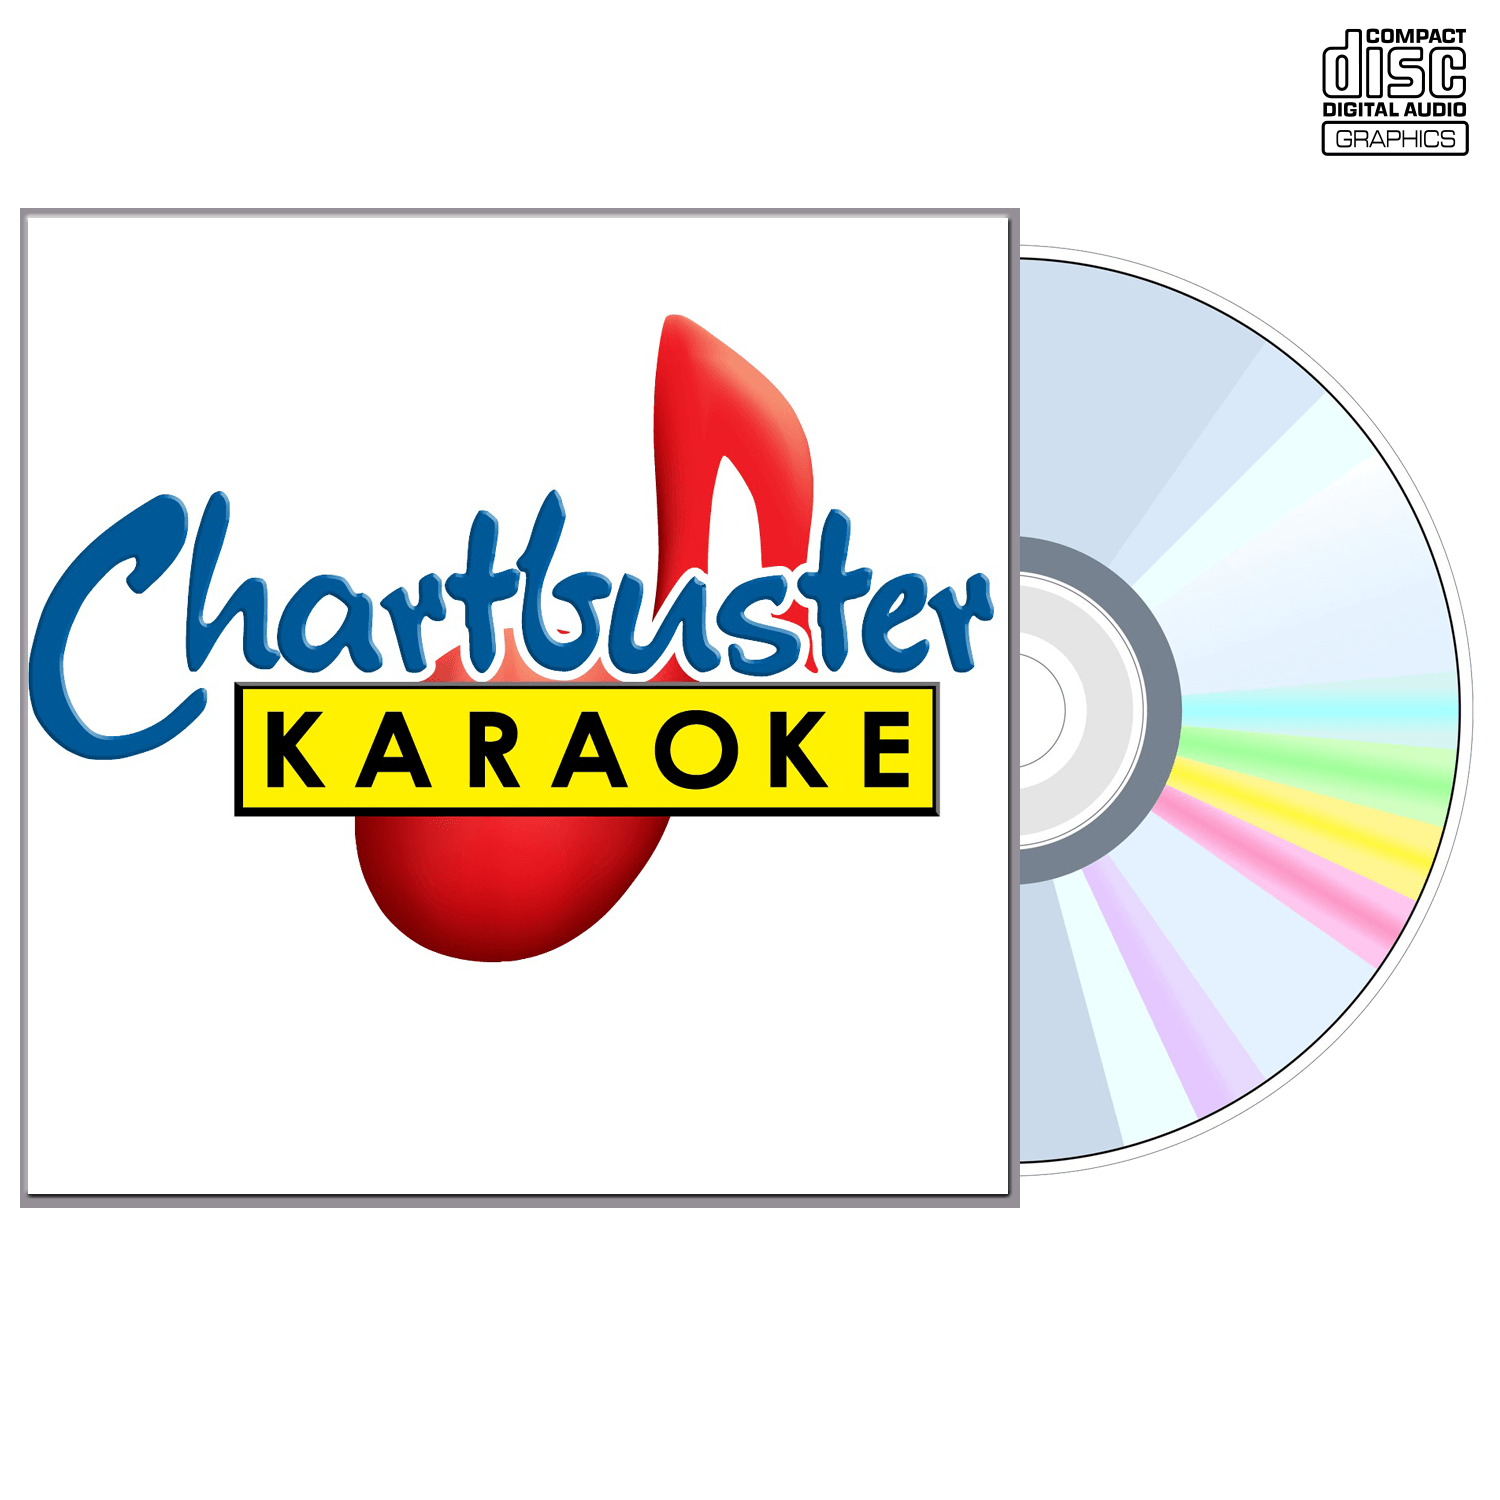 Joe And Rory Feek - CD+G - Chartbuster Karaoke - Karaoke Home Entertainment